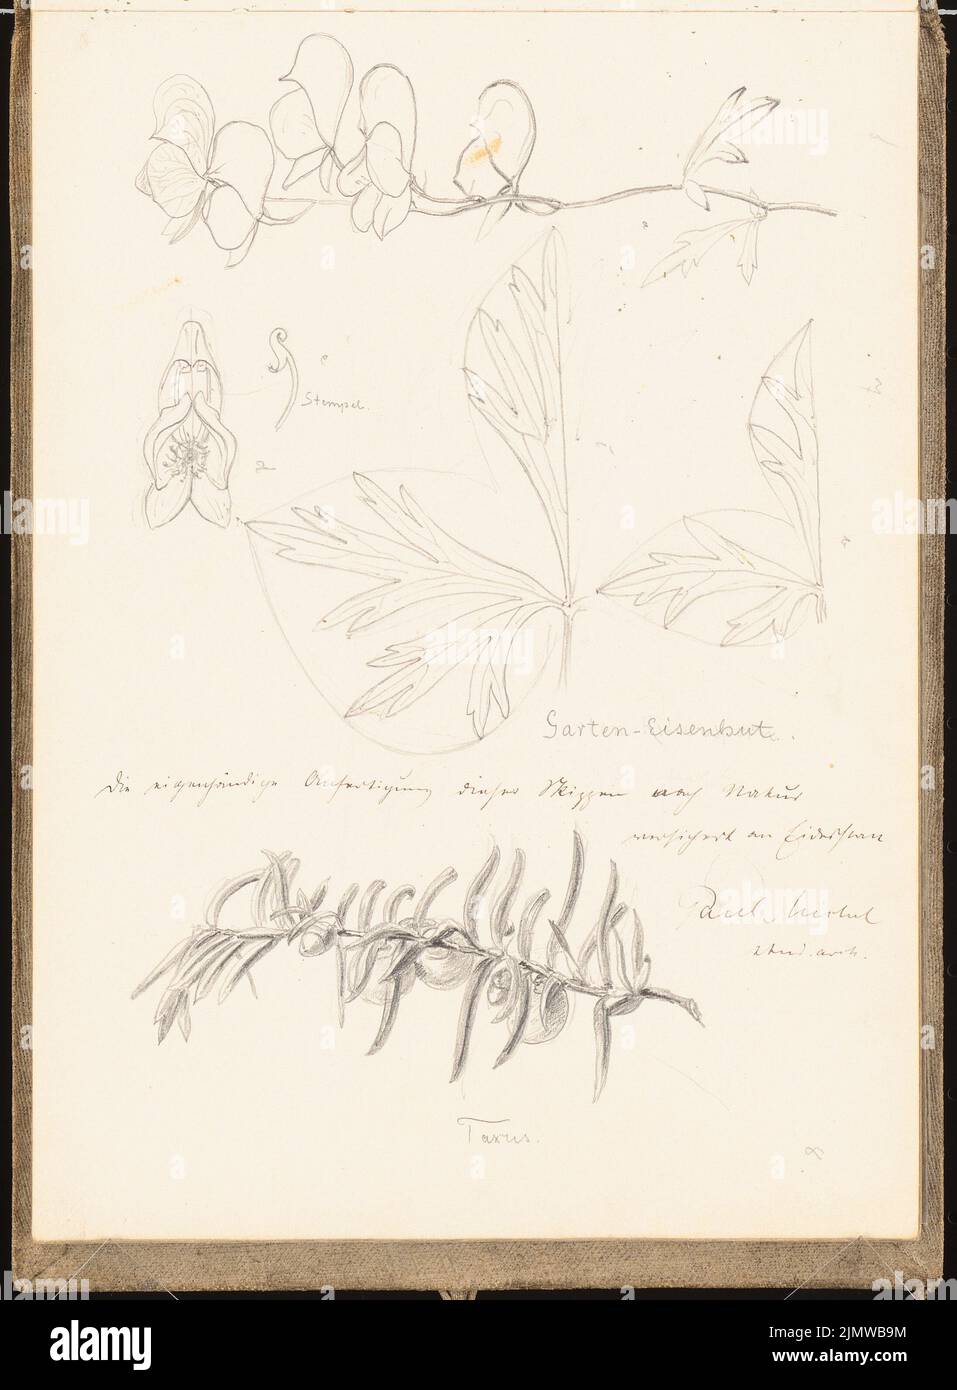 Michel Paul sen. (1877-1938), sketchbook. 1899 (1898-1898): Plant studies. Pencil on paper, 25.2 x 18.6 cm (including scan edges) Michel Paul sen.  (1877-1938): Skizzenbuch. 1899 Stock Photo